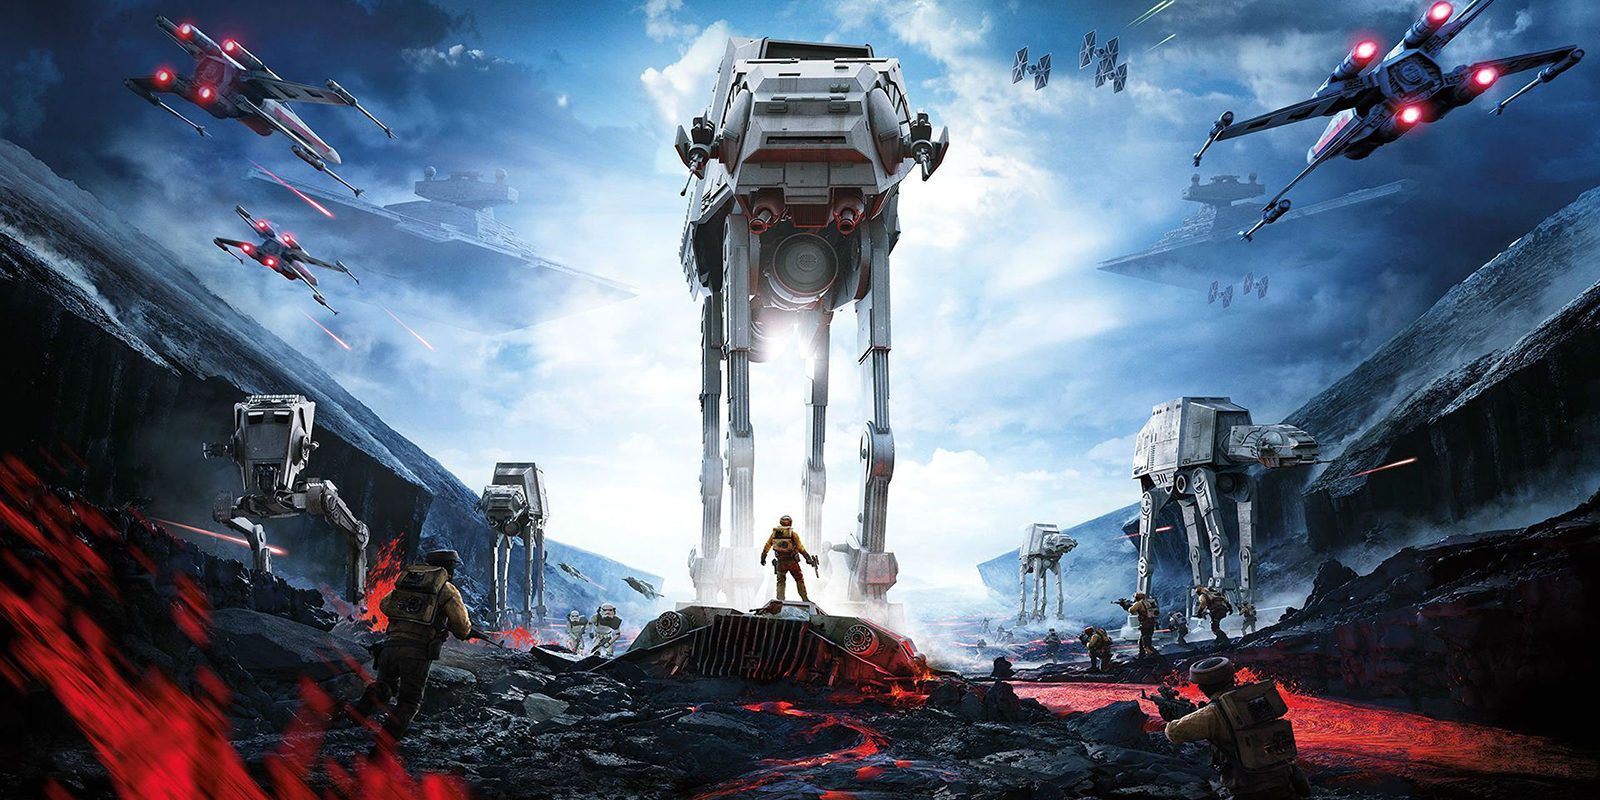 'Star Wars': Los creadores de 'Juego de tronos' trabajan en una nueva saga